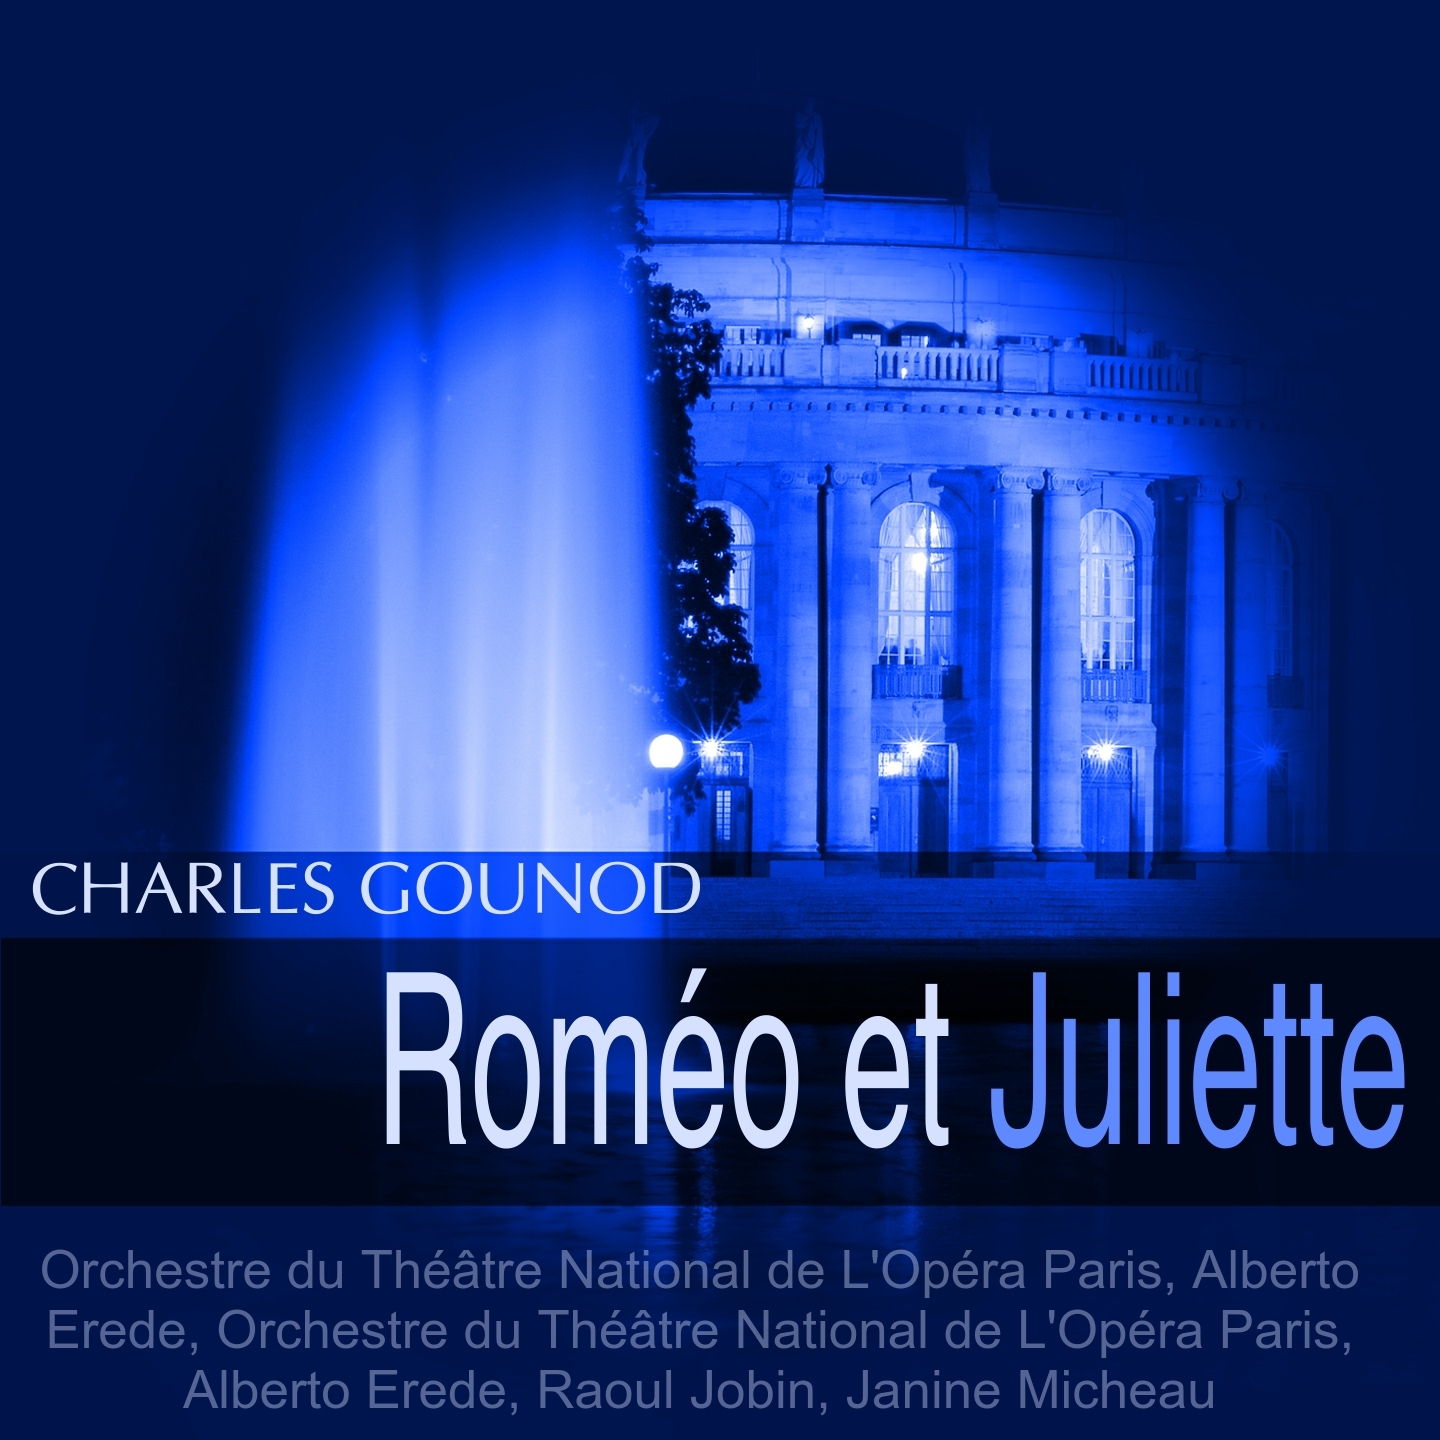 Rome o et Juliette, Act I: " Quelqu' un! C' est mon cousin Tybalt!" Rome o, Juliette